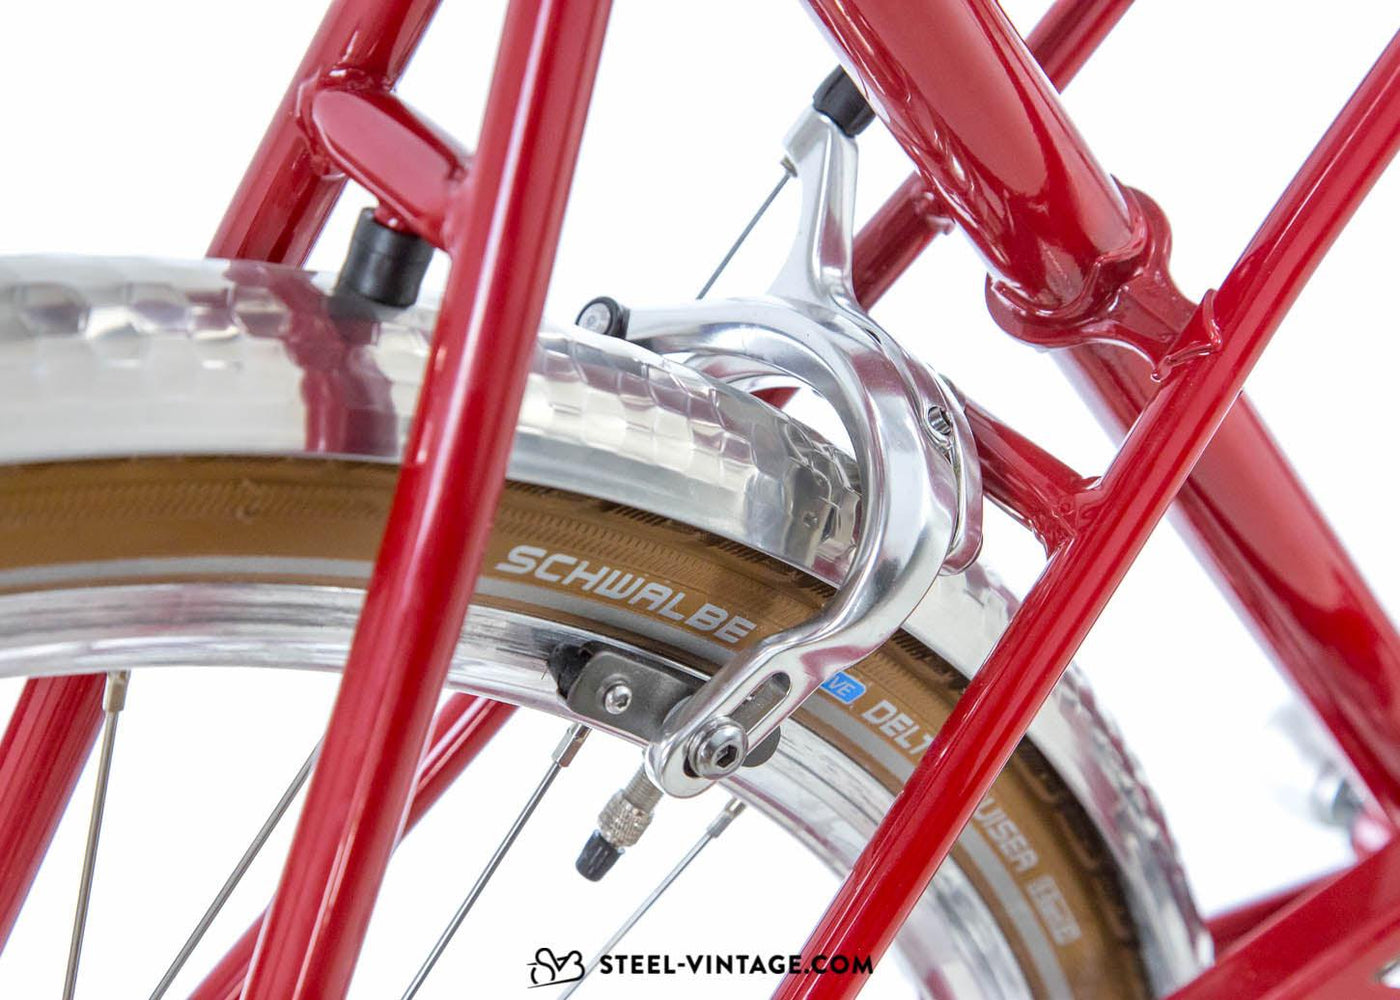 Classic SVB Mixte Ladies Bicycle - Steel Vintage Bikes